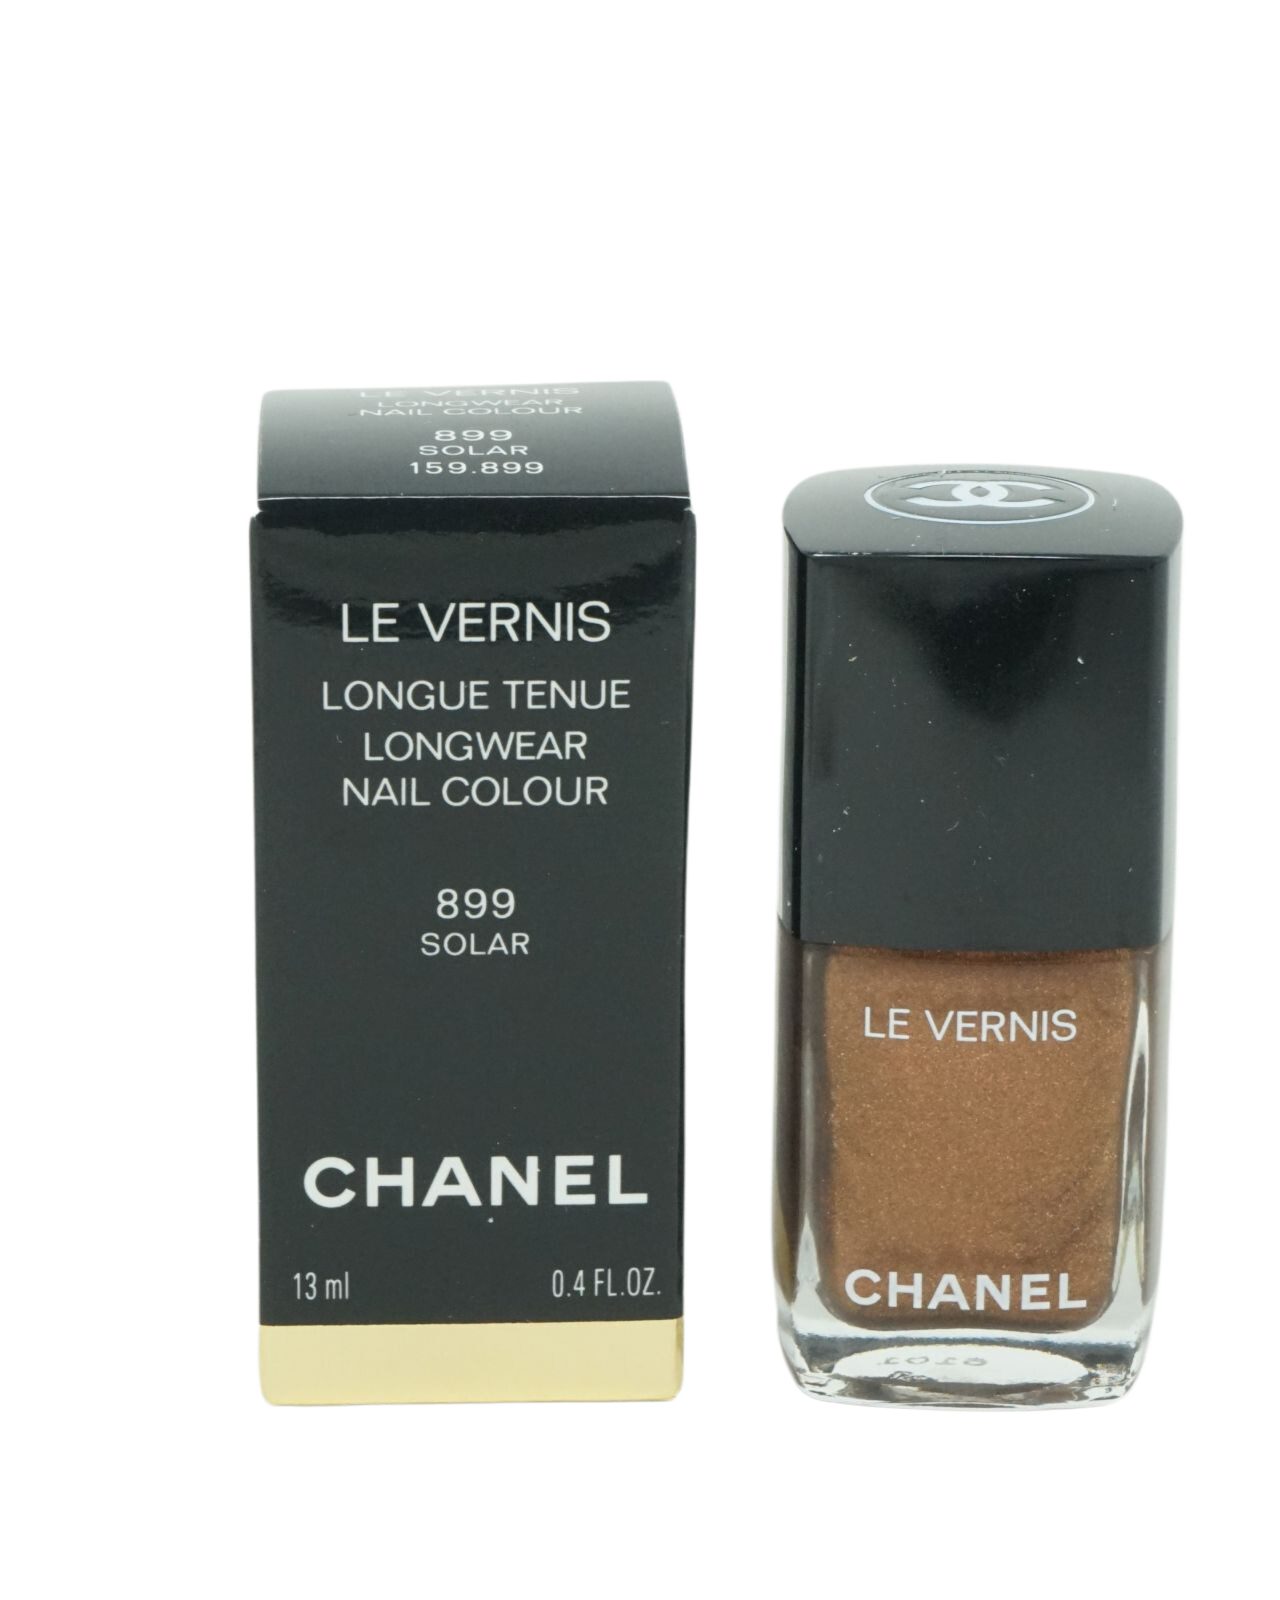 13ml Solar Chanel Vernis Le Longwear Nagellack CHANEL 899 Nagellack